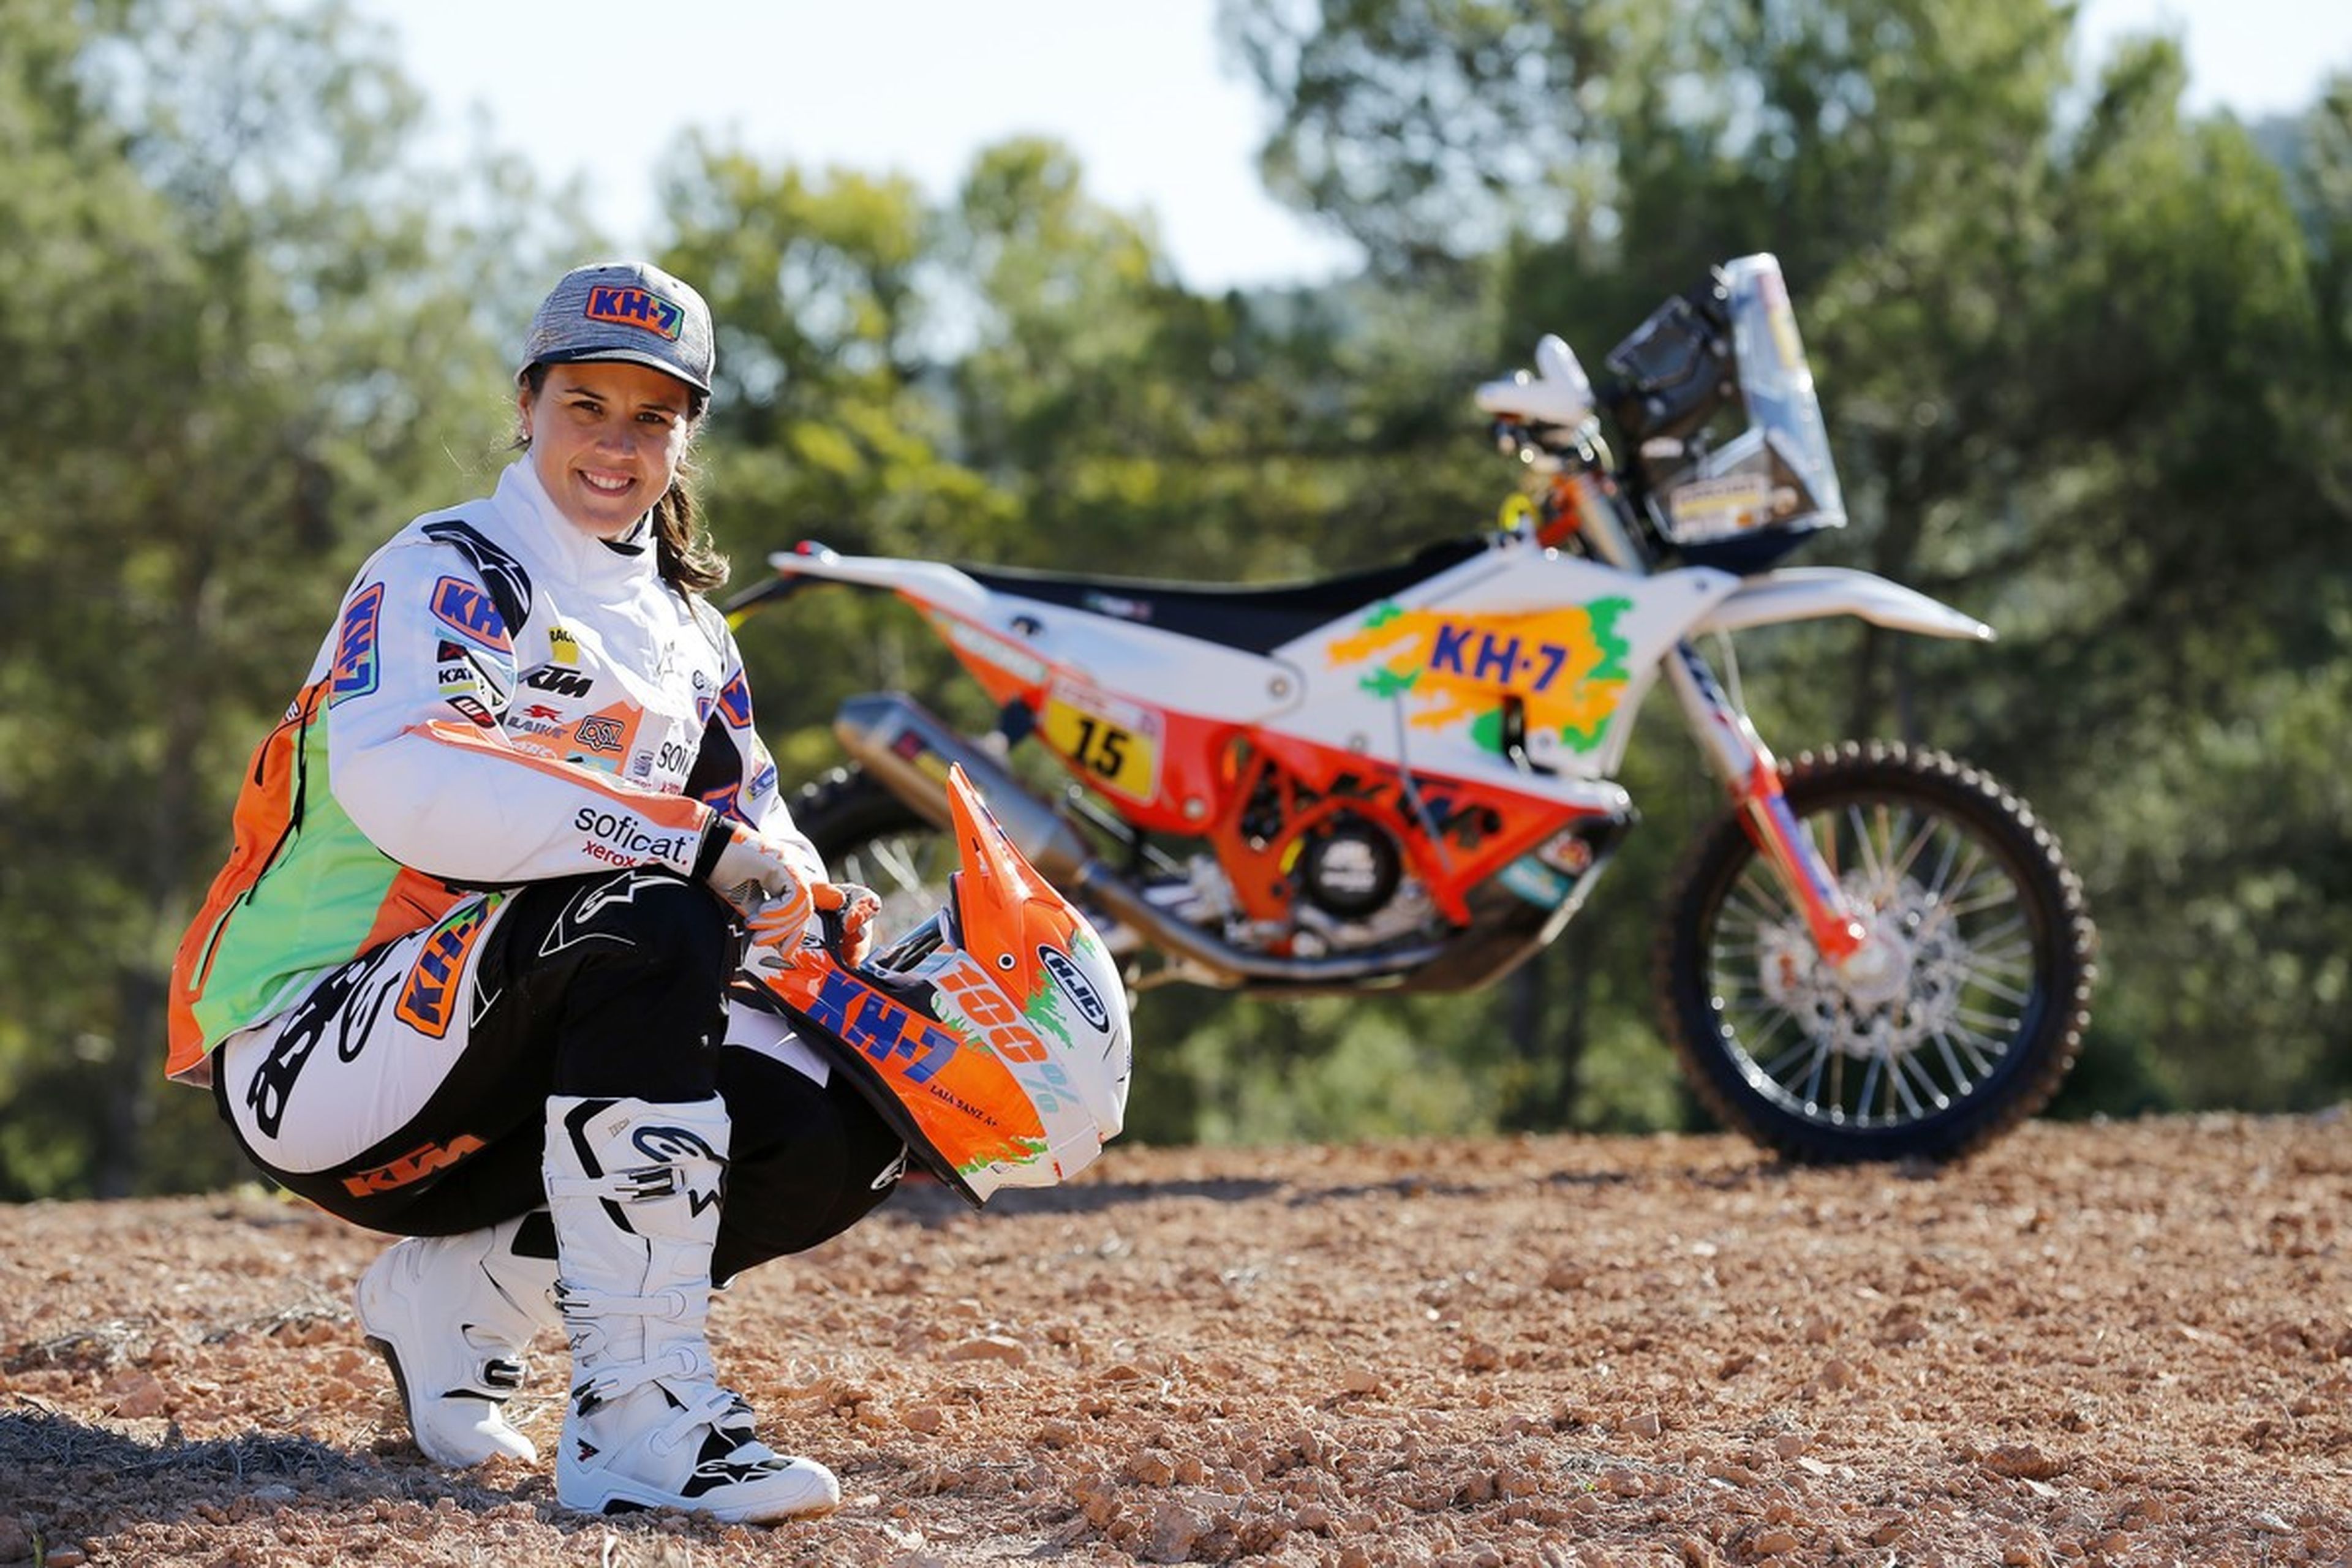 A Laia Sanz le encantaría correr el Dakar en coches, pero sobre todo con Seat